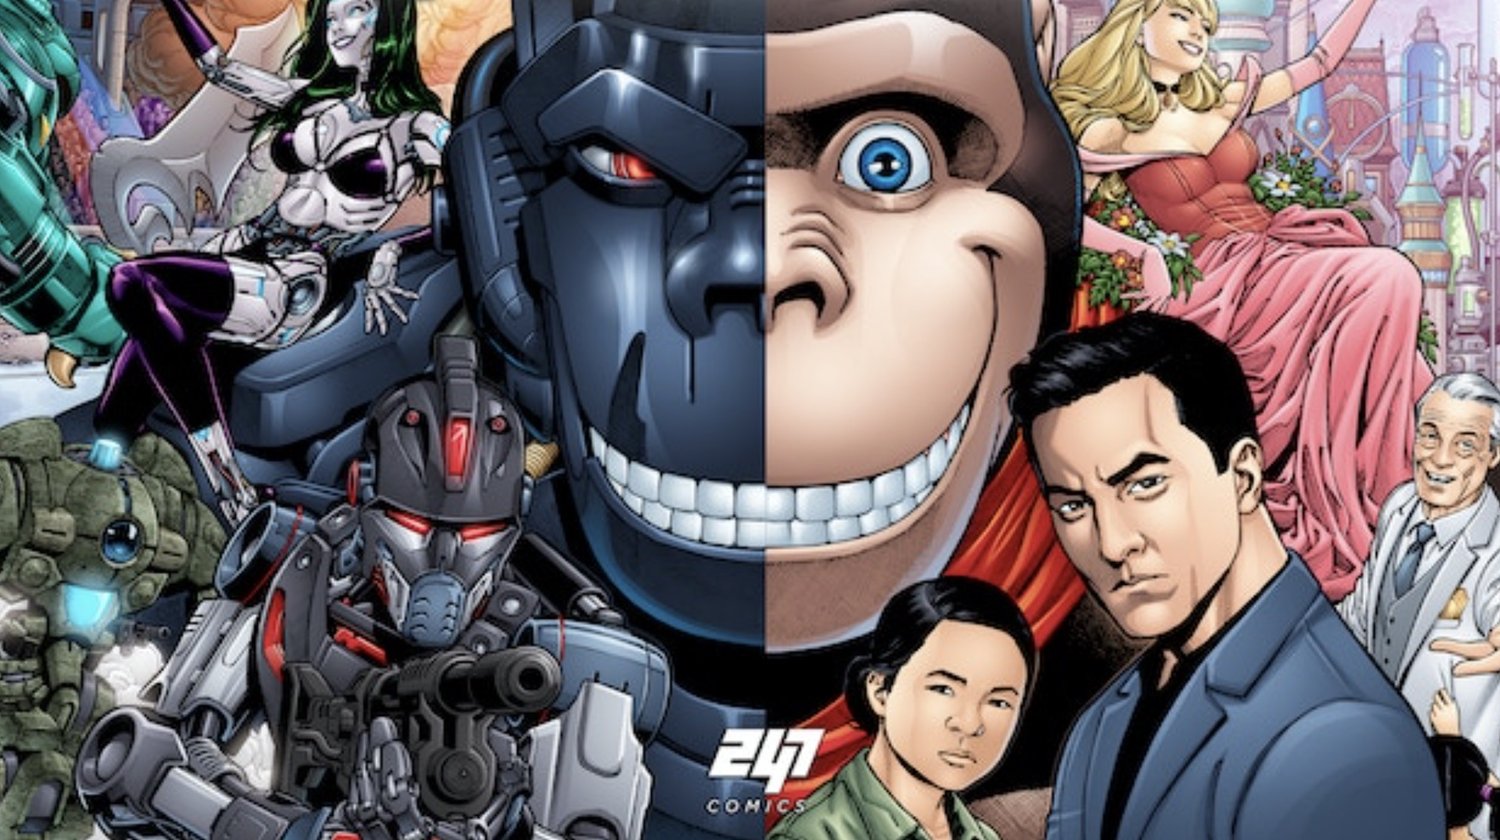 Le producteur d’INTO THE BADLANDS, Daniel Wu, développe une série de bandes dessinées de science-fiction EVERMIND qui sera adaptée au cinéma et à la télévision.